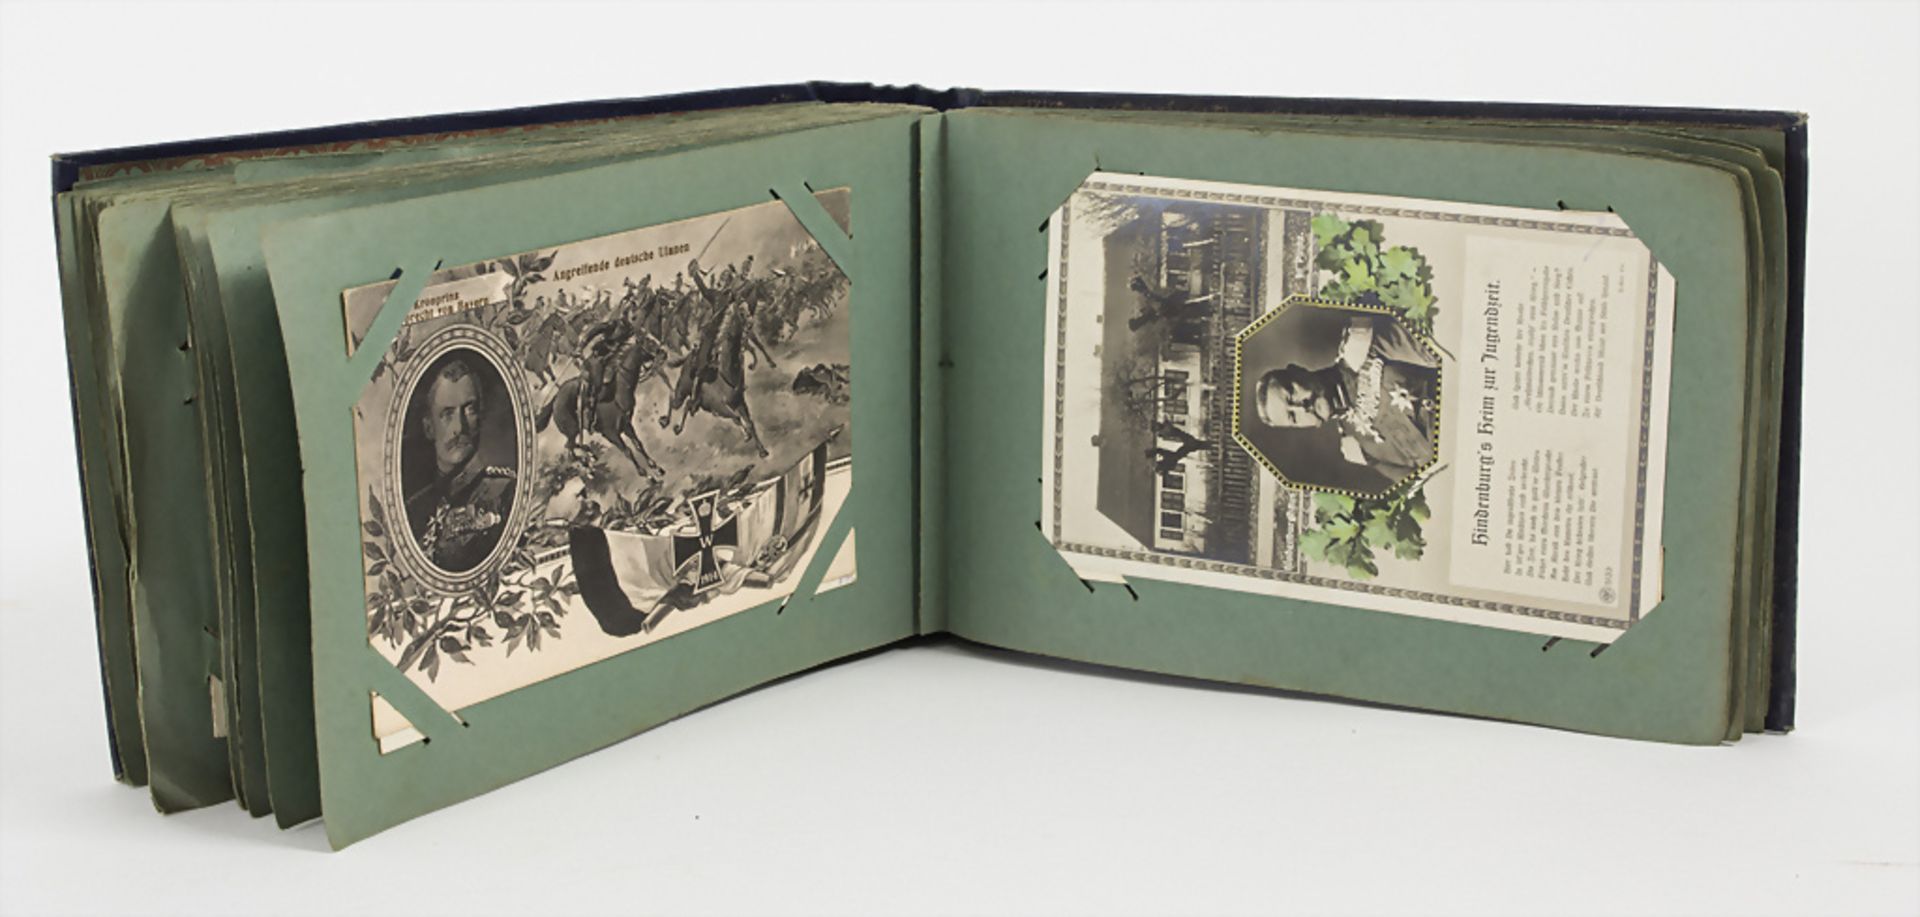 Postkarten Album mit 89 Karten / An album with 89 postcards, um 1900